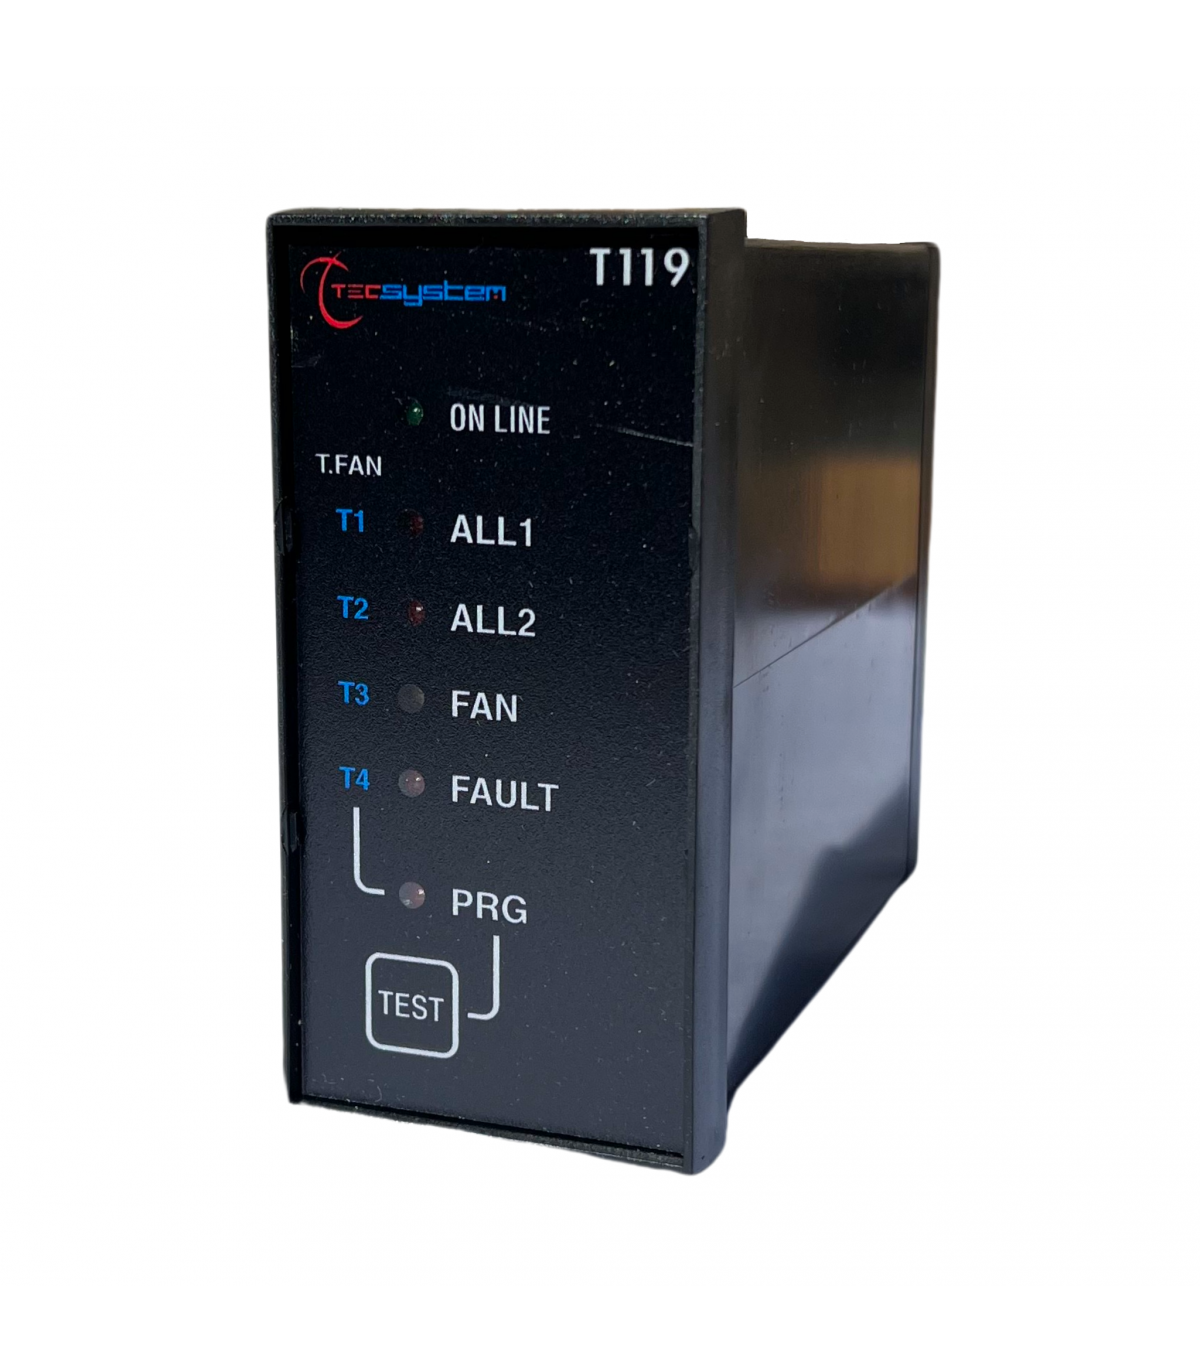 Thermostat avec sonde à distance (sonde ptc non fournie avec le thermostat)  230V EBERLE